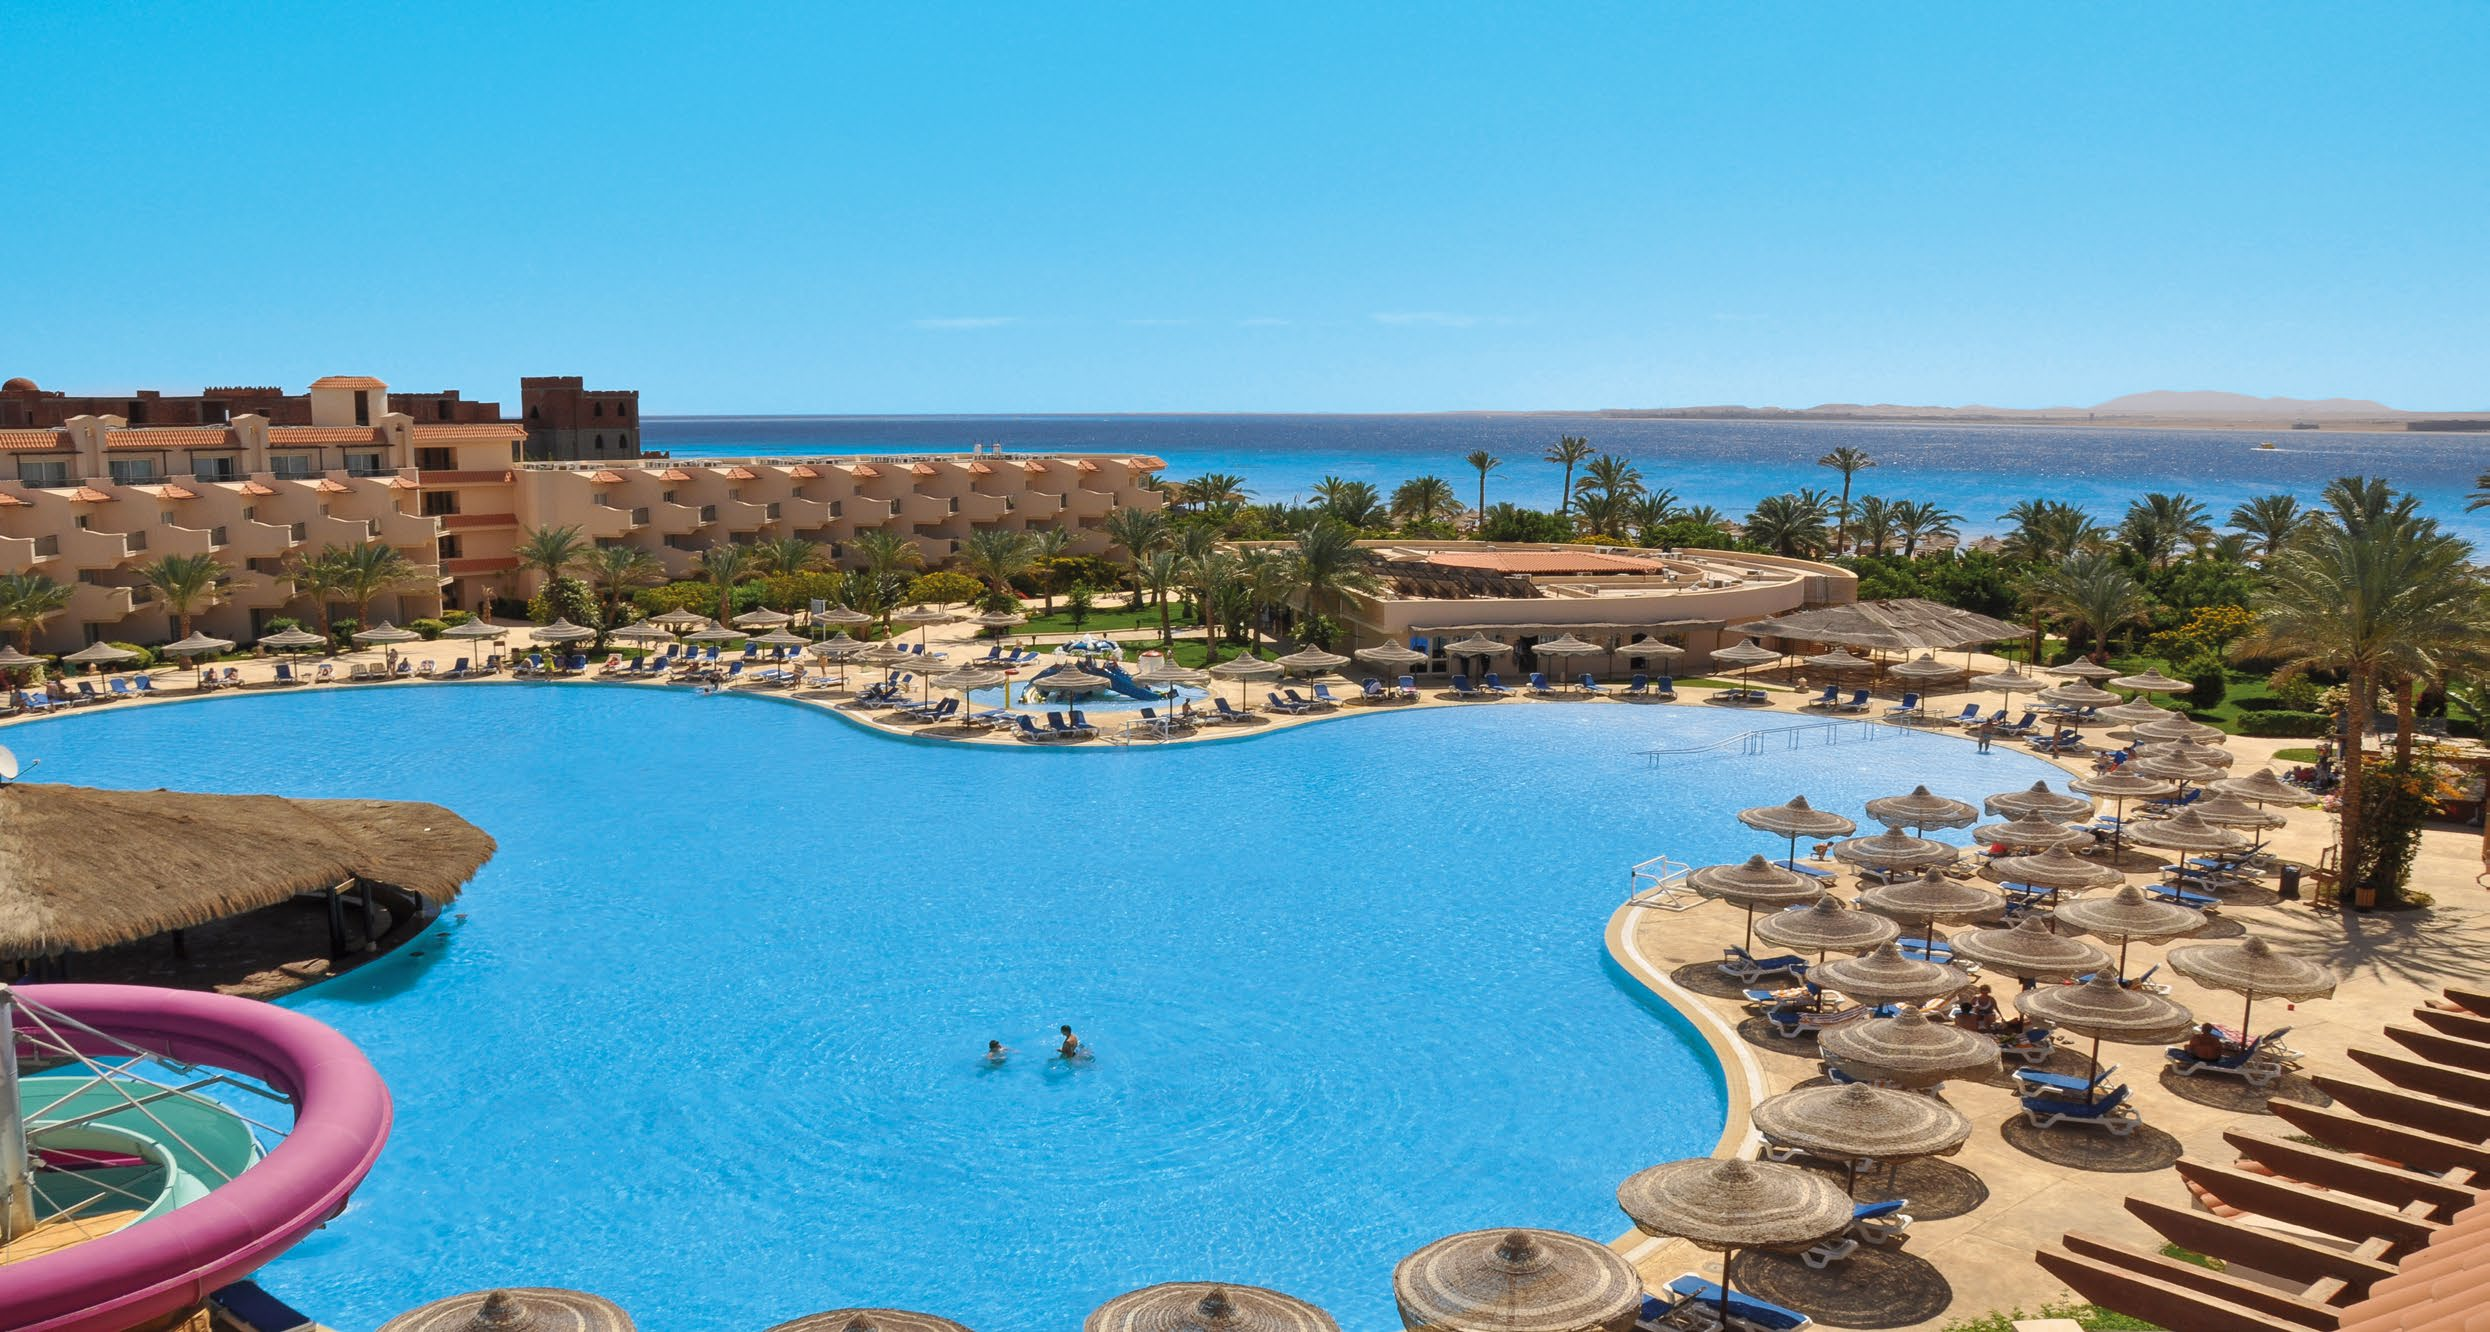 10 EGYPT ~SAHL HASHEESH novinka pre leto 2017 cenový hit nové novinka v ponuke od 338 Pyramisa HOTEL Beach Resort Naša mienka: Vynikajúci hotelový rezort, vsadený do rozľahlej záhrady plnej paliem na